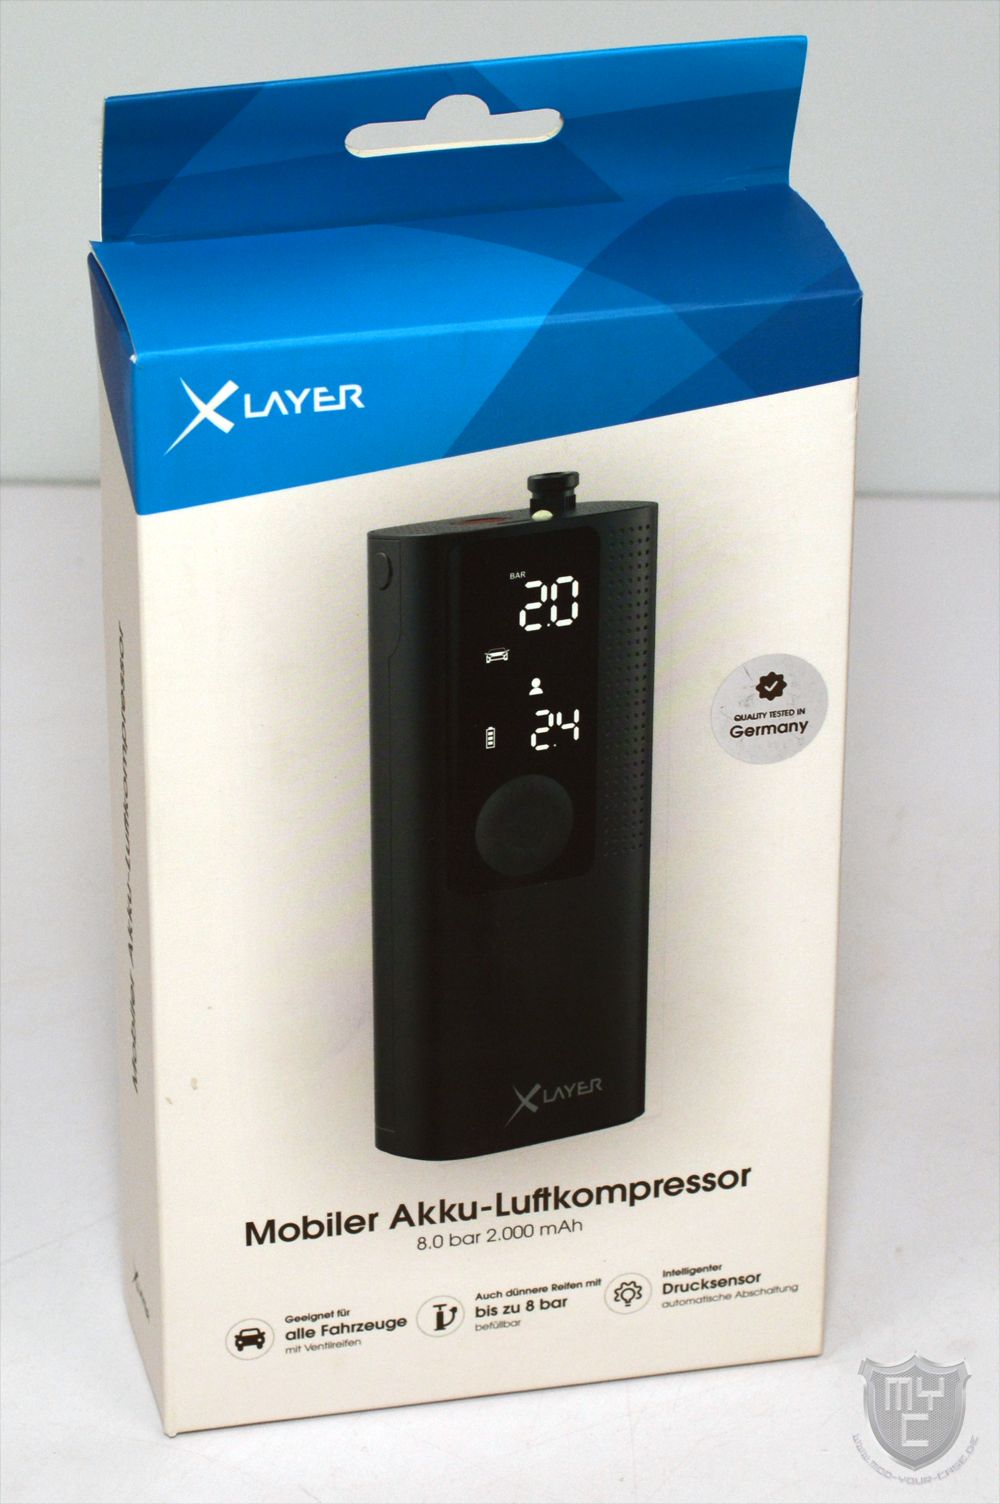 Xlayer – Mobiler Akku-Luftkompressor mit bis zu 8.0 bar Luftdruck